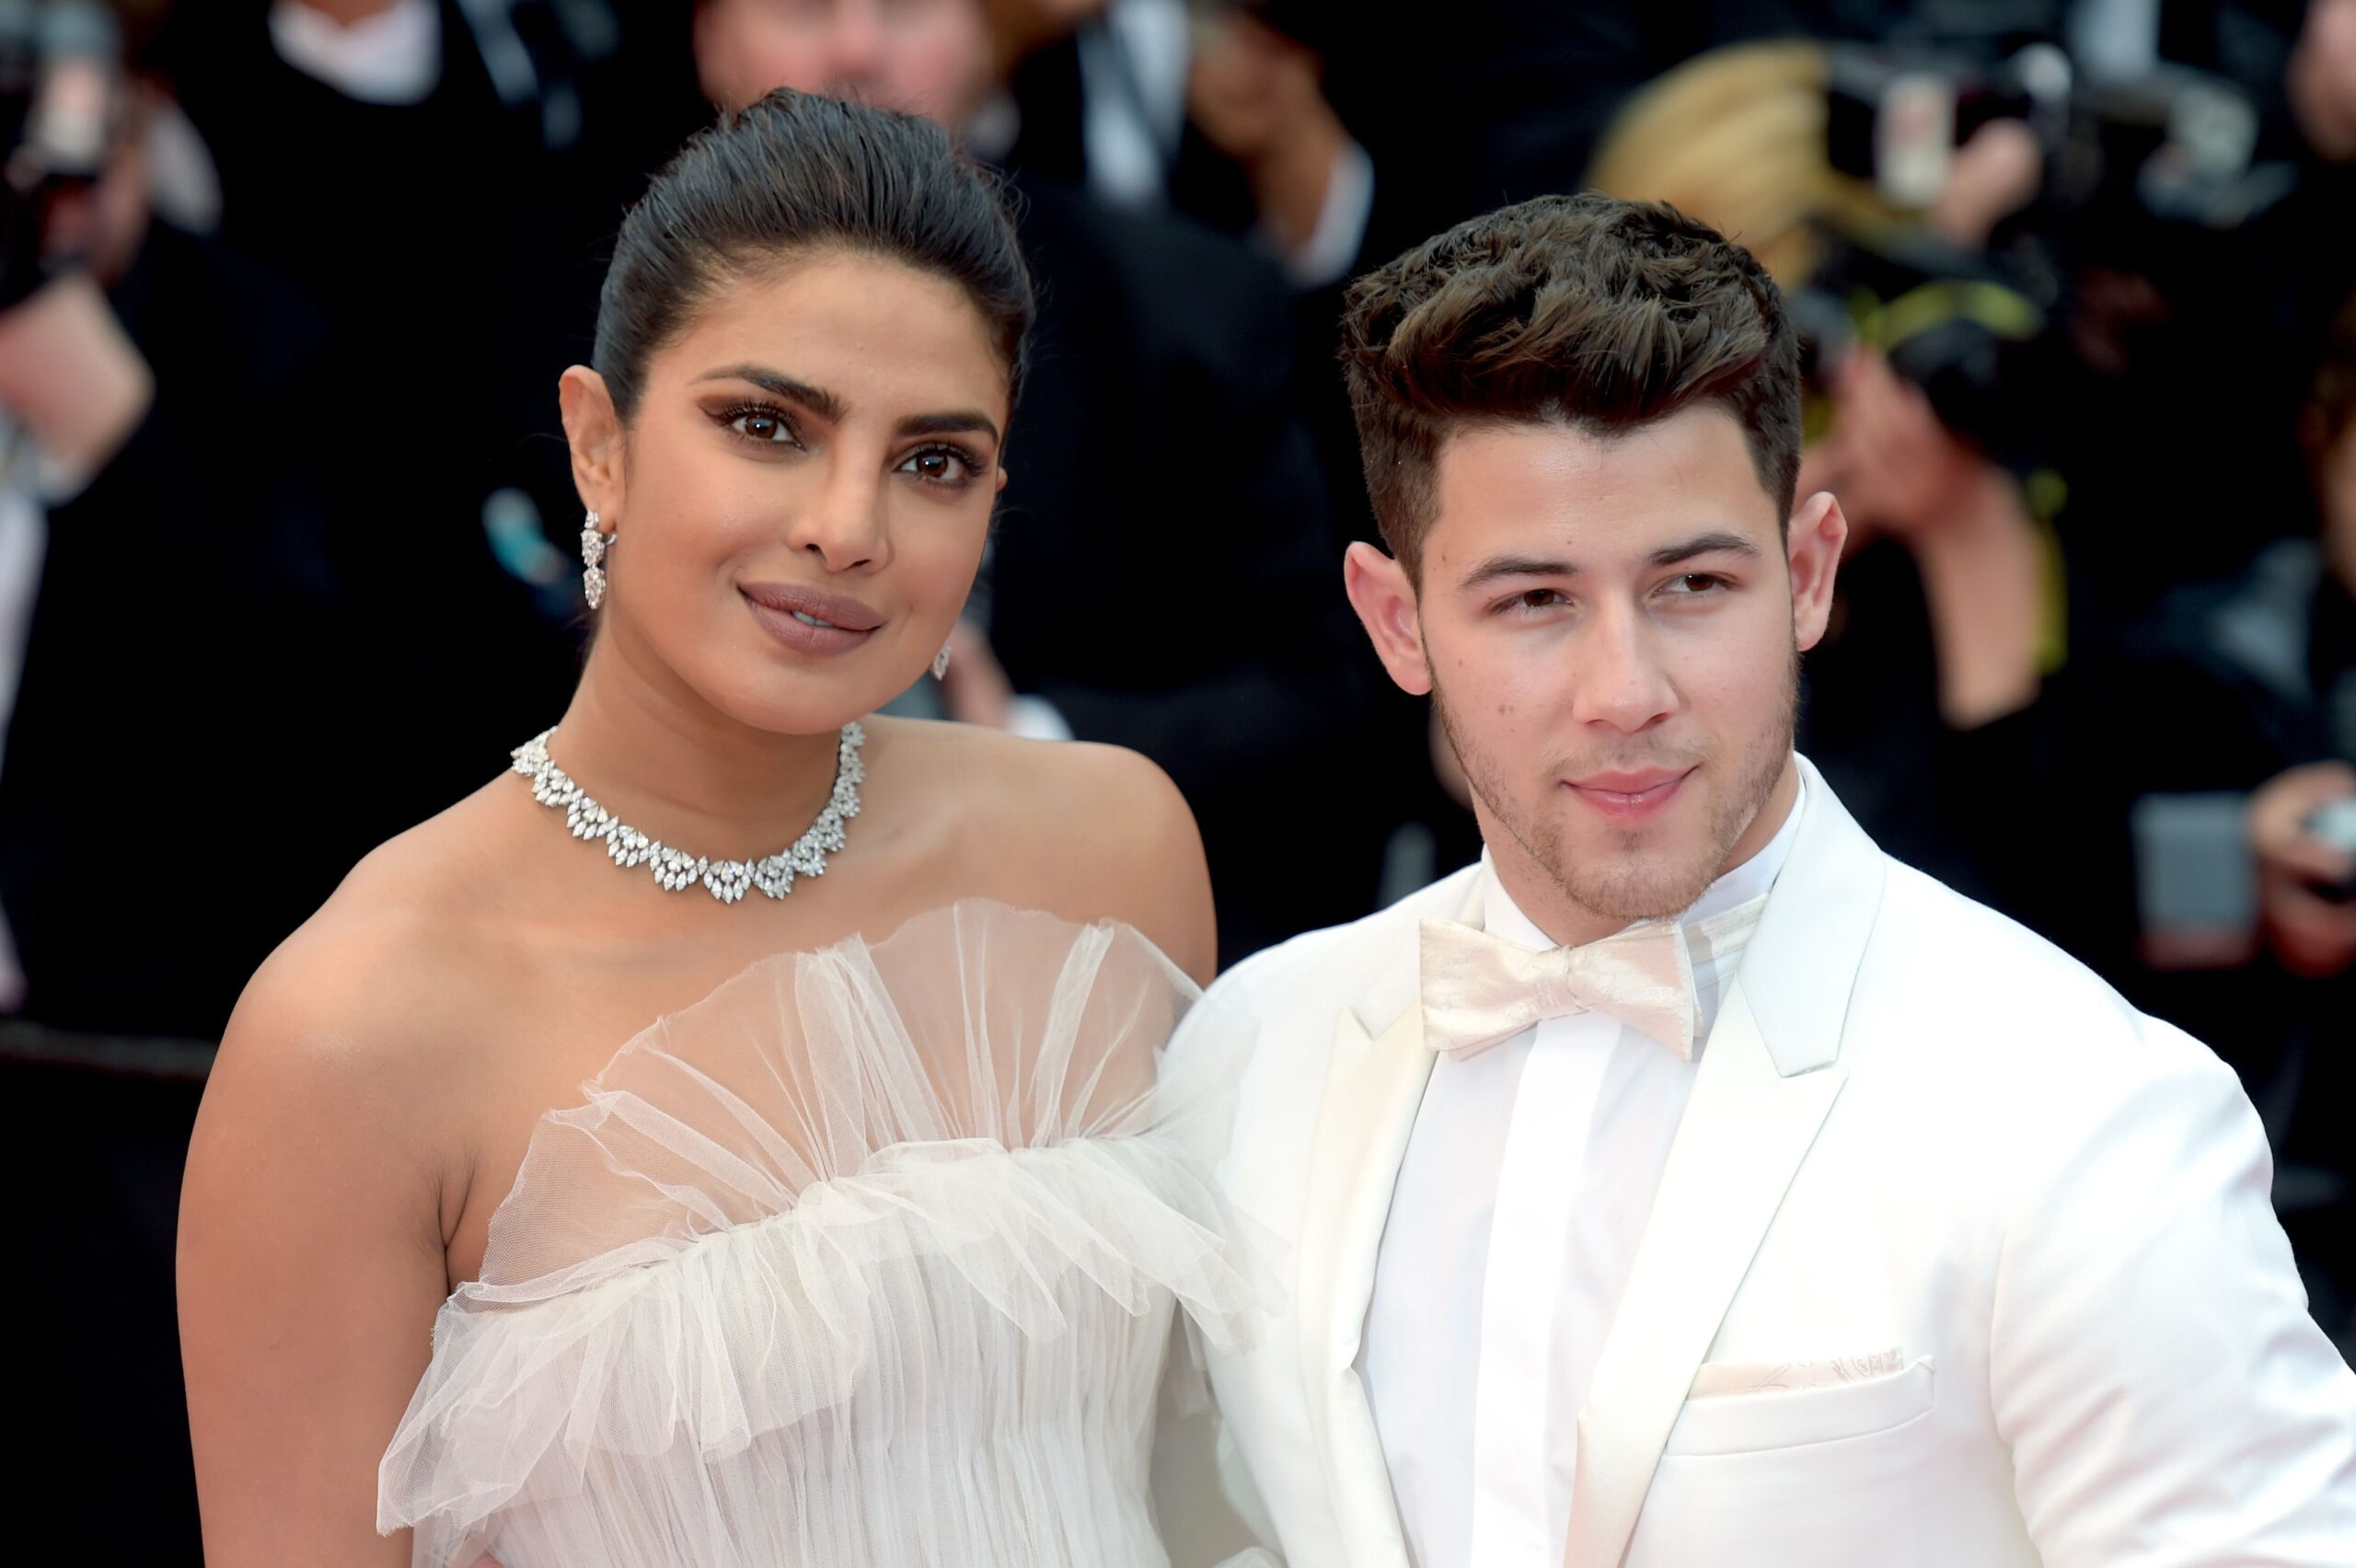 Nick Jonas Wishes His Love Priyanka Chopra On Wedding Anniversary